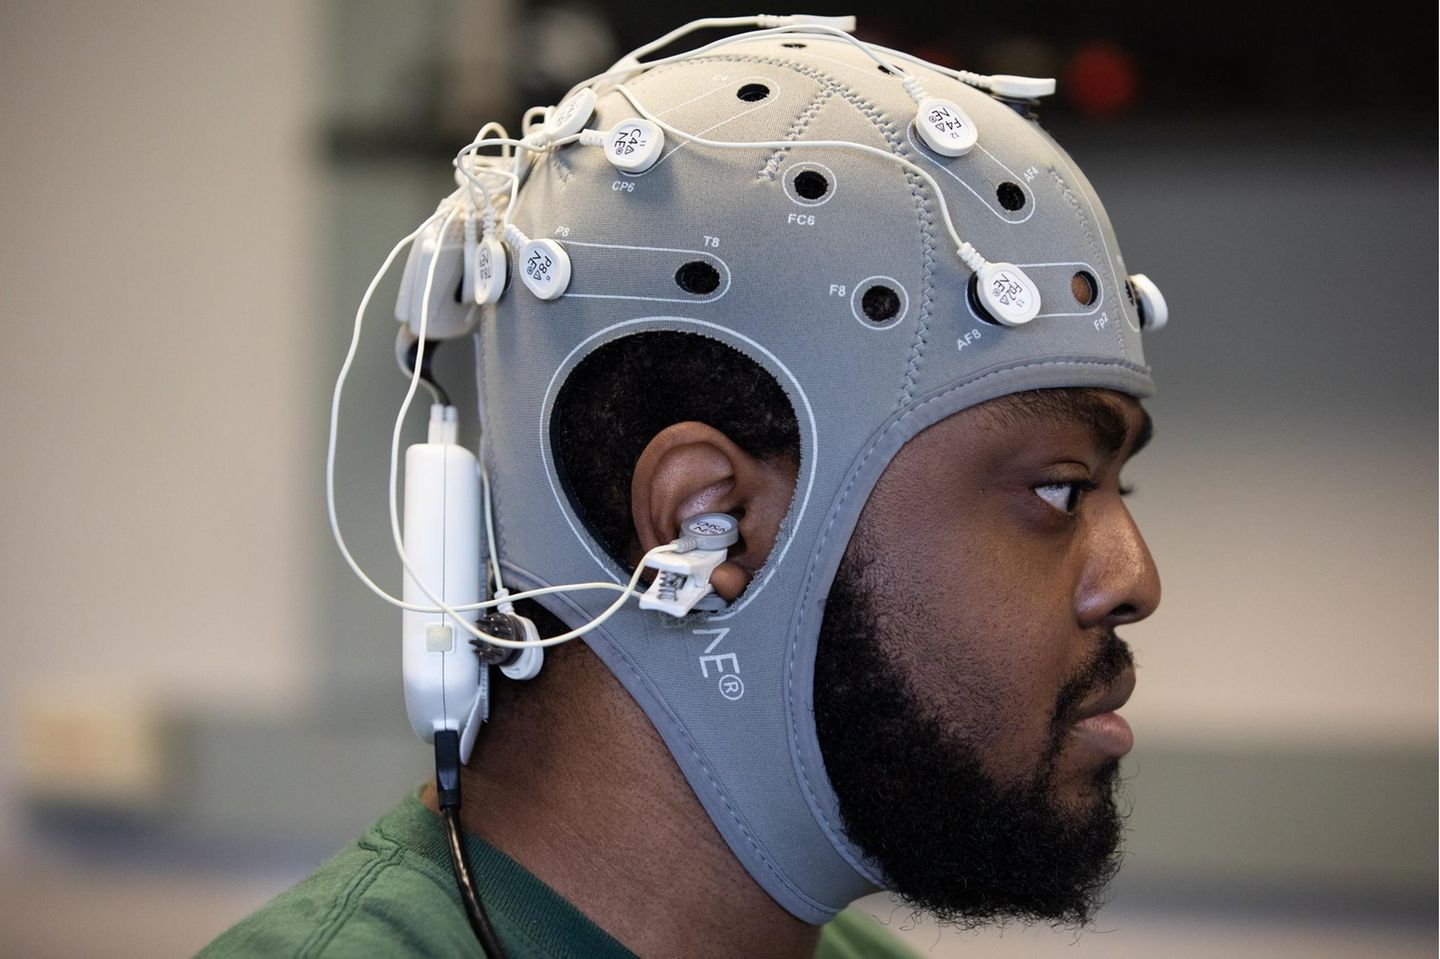 Sogenannte Brain-Computer-Interfaces ("BCIs") verbinden Elektroden mit den Nervenzellen und trainieren das Gehirn. Dadurch kann der Bewegungsapparat verbessert werden, hier ein Testversuch in den USA